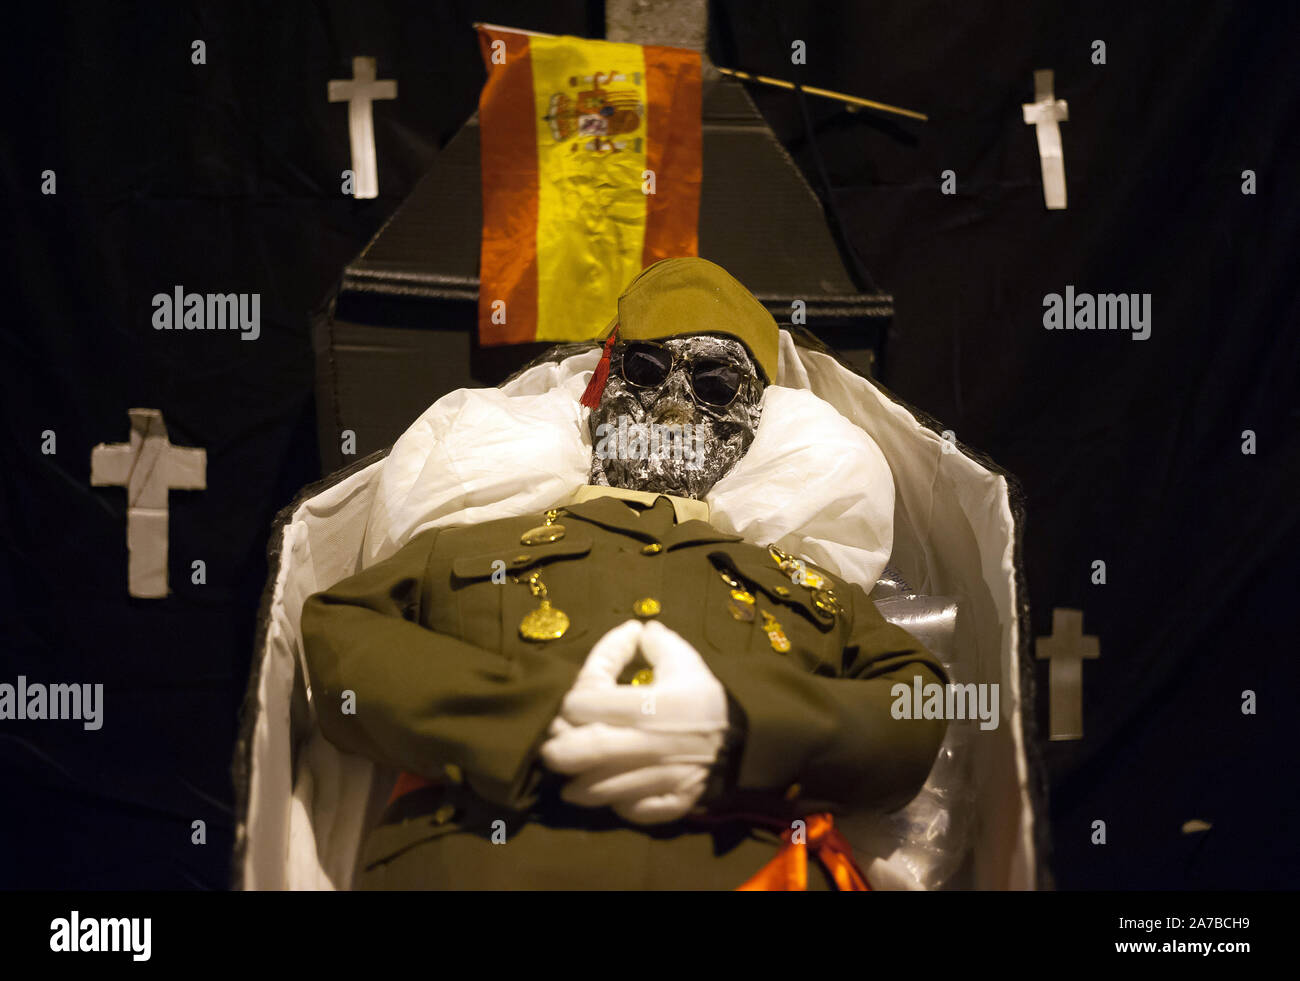 Eine Puppe, die den spanischen Diktator Francisco Franco ist mit einer spanischen Flagge in einem Sarg während der VI-Ausgabe von 'Churriana Noche del Terror gesehen' (churriana Horror Night) der Halloween Nacht in der Nachbarschaft von Churriana feiern. Wohnsitz in Churriana beteiligen sich an der Halloween Tag mit schrecklichen Kostüme gekleidet, ihre Häuser zu verzieren und mit unheimlichen Leistungen entlang der Straßen. Die 'Churriana Horror Night' ist eine der beliebtesten Veranstaltungen in der Stadt markiert die Halloween Tag, und bei dieser Gelegenheit das Thema der Ausgabe ist die Hexen. Stockfoto